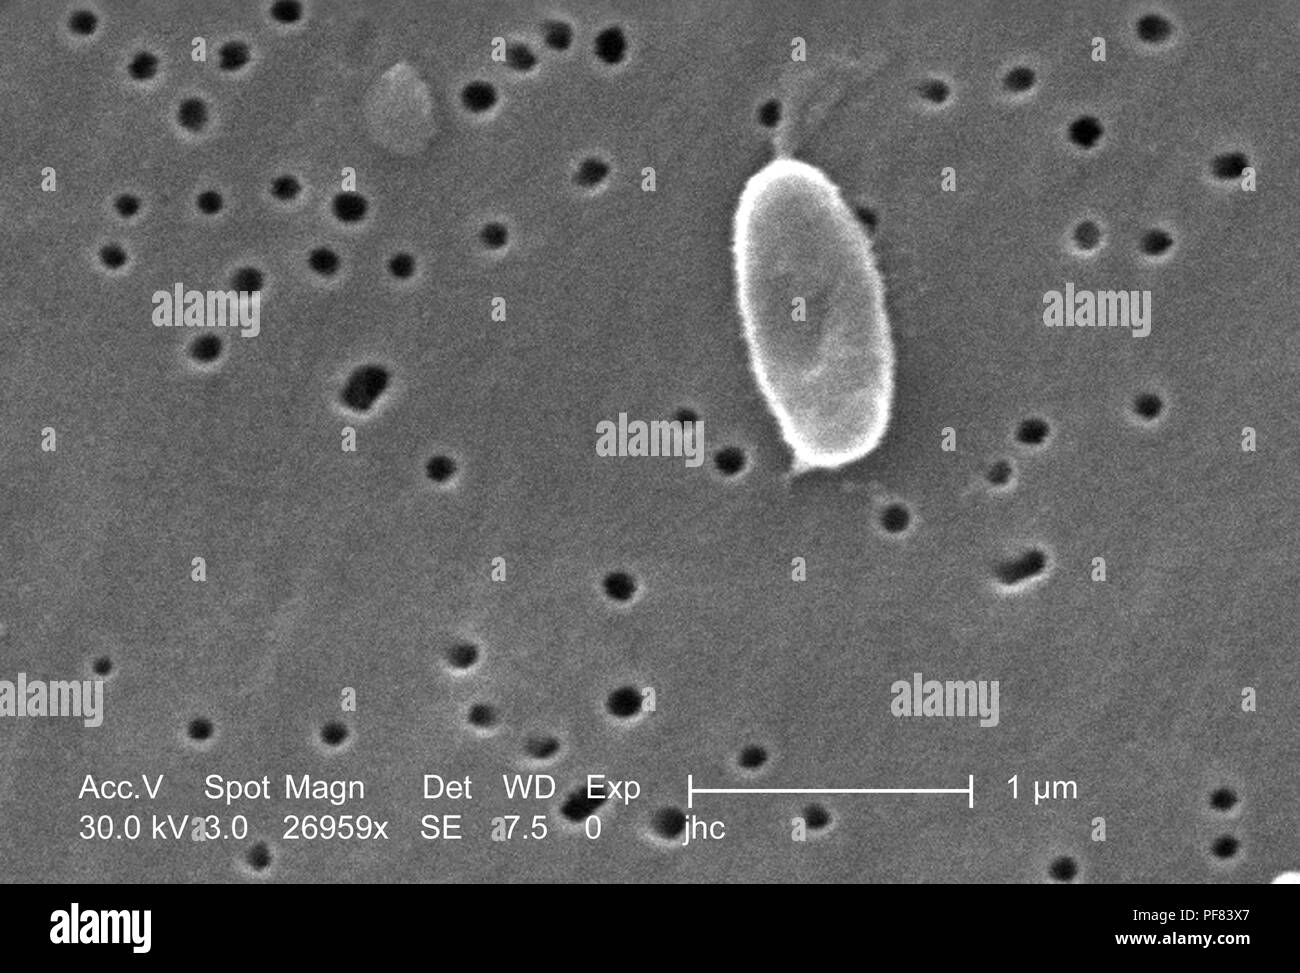 Fortemente ingrandita di un Ralstonia mannitolilytica batterio ha rivelato nel 26959x scansione ingrandita al microscopio elettronico (SEM) immagine, 2006. Immagine cortesia di centri per il controllo delle malattie (CDC) / Judith Noble-Wang, Ph.D. () Foto Stock